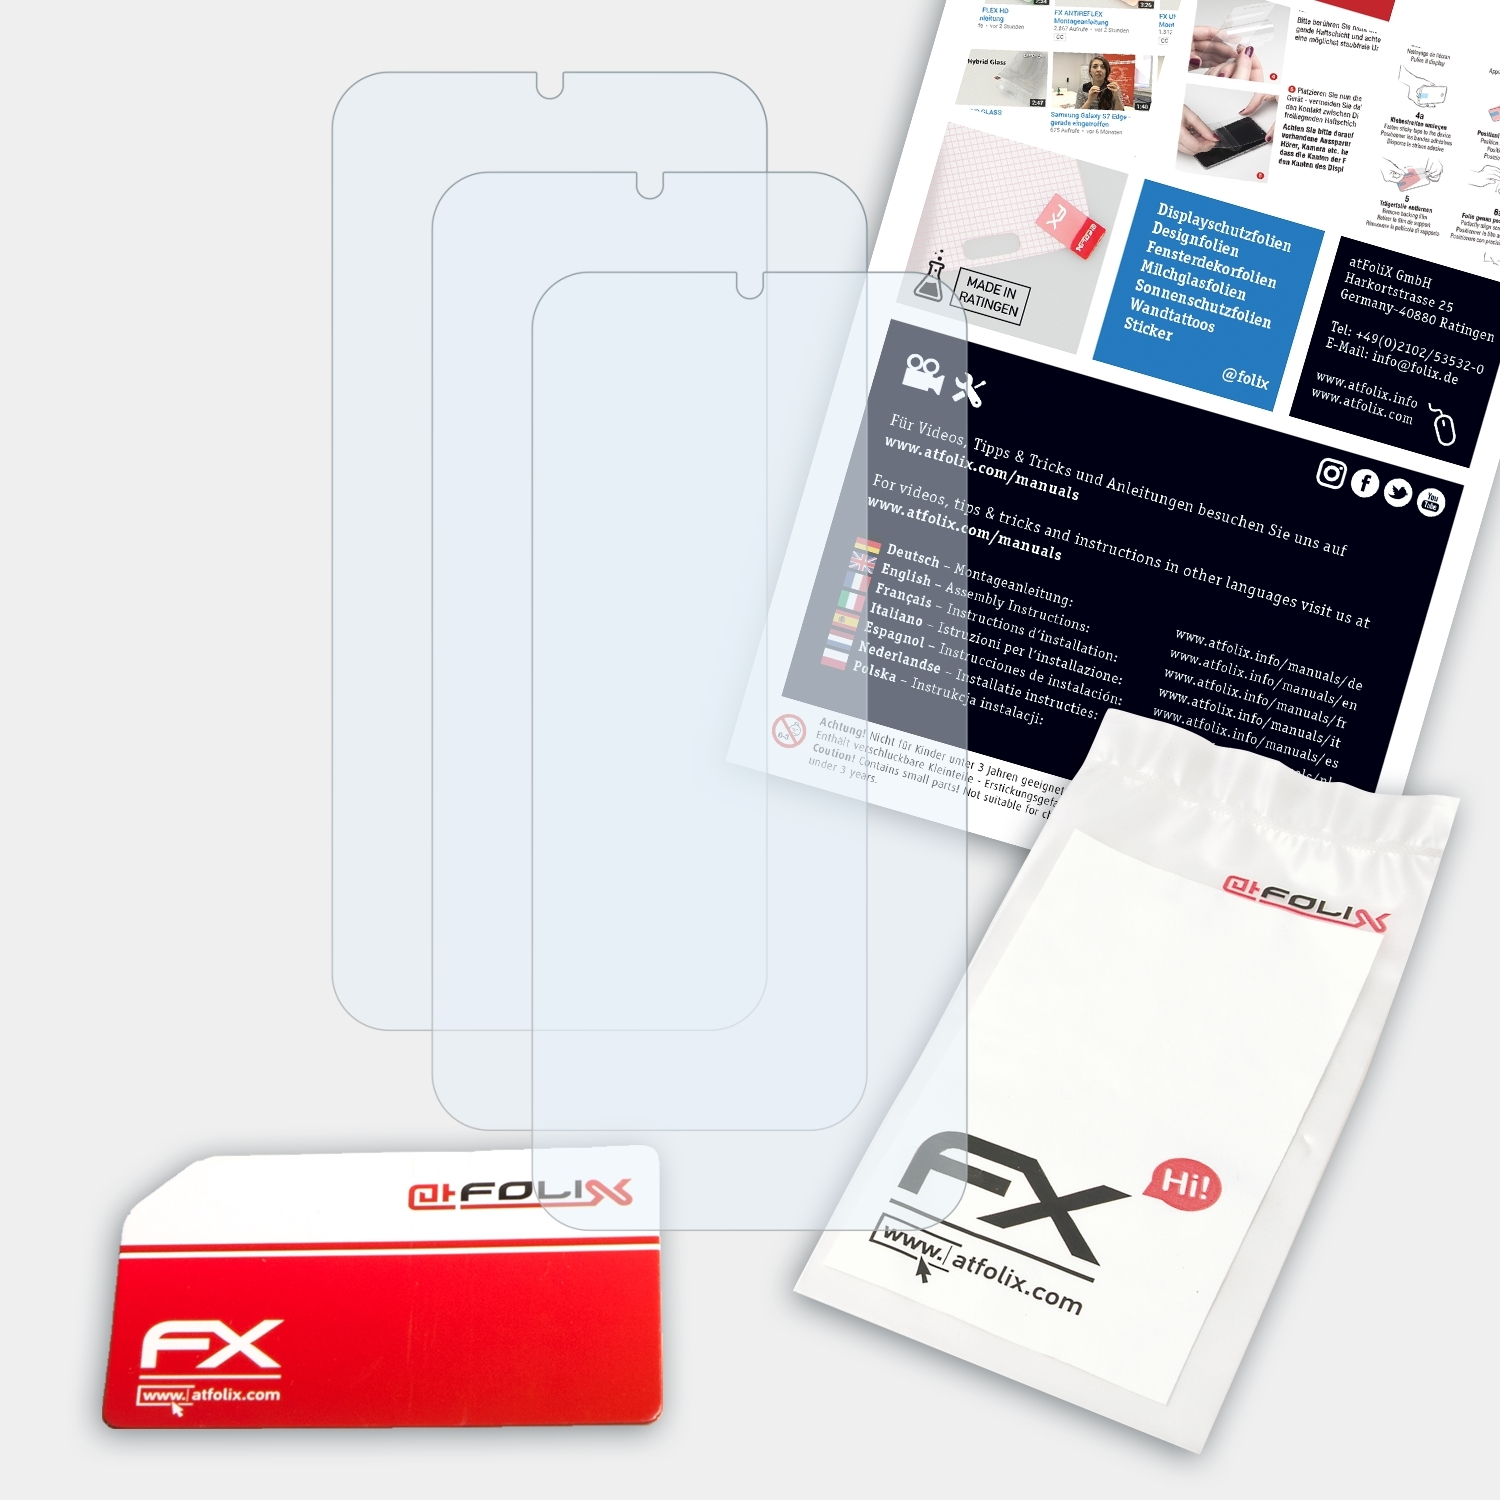 3x ATFOLIX Displayschutz(für Nokia FX-Clear 3.2)